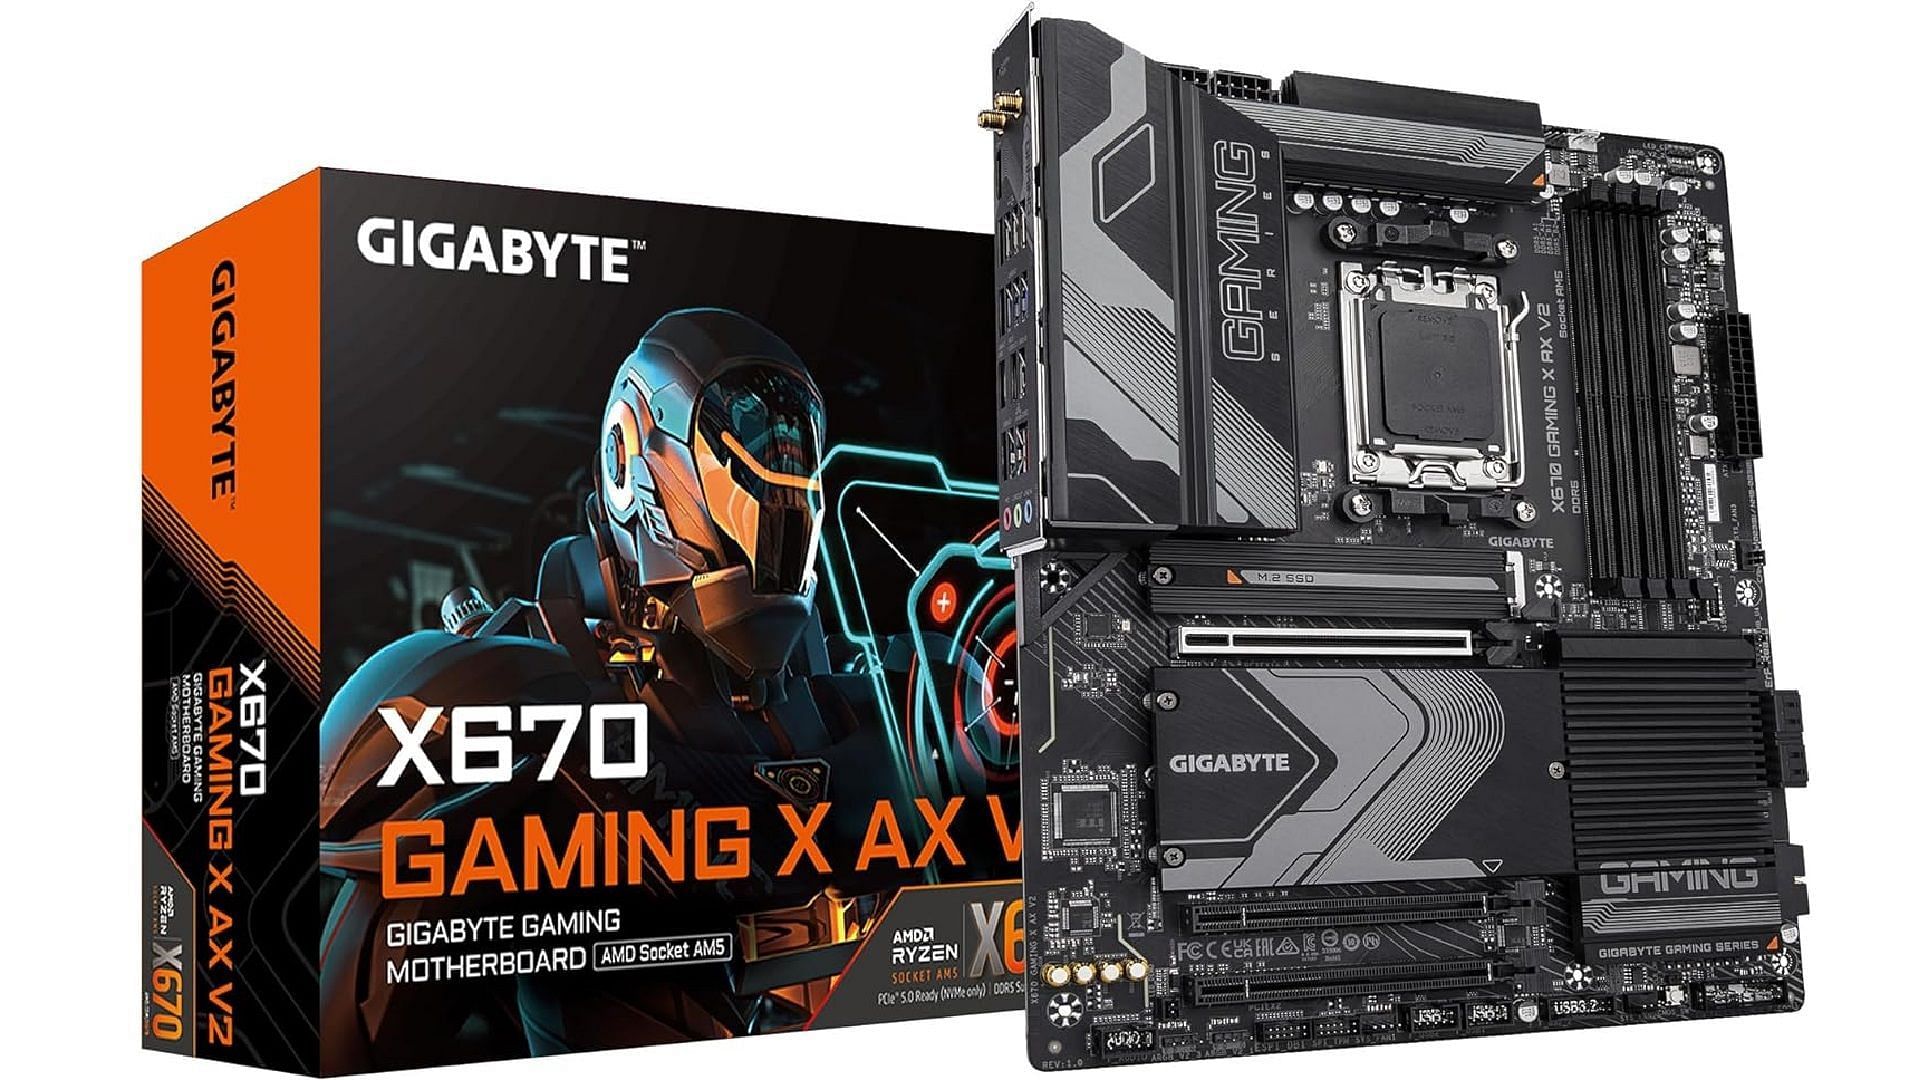 GIGABYTE X670 Gaming X AX V2 Motherboard (Image via Gigabyte/Amazon)